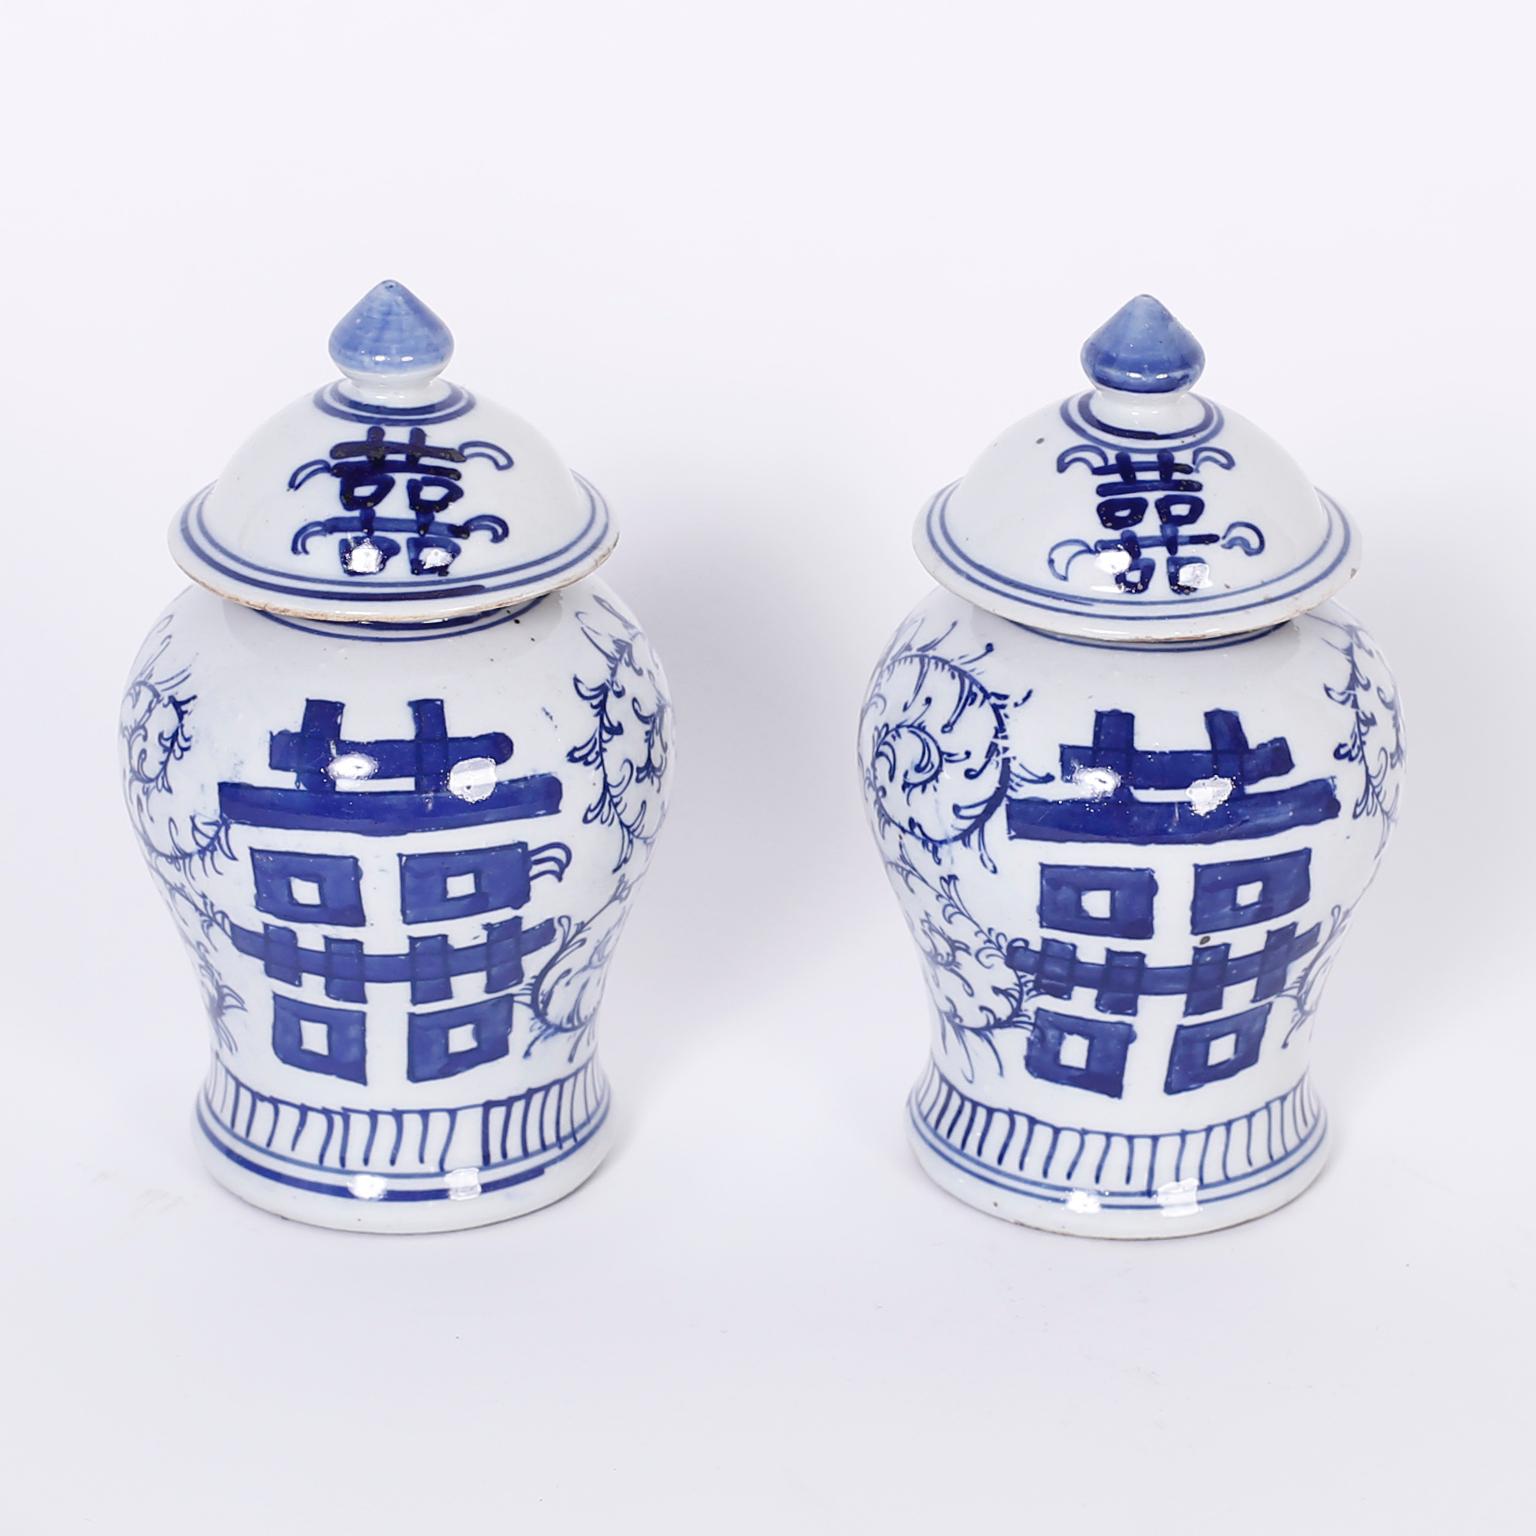 Chinesische blau-weiße Porzellan-Deckelgläser in klassischer Form und mit dem bekannten Symbol der Freude und Einheit des doppelten Glücks auf Vorder- und Rückseite verziert.